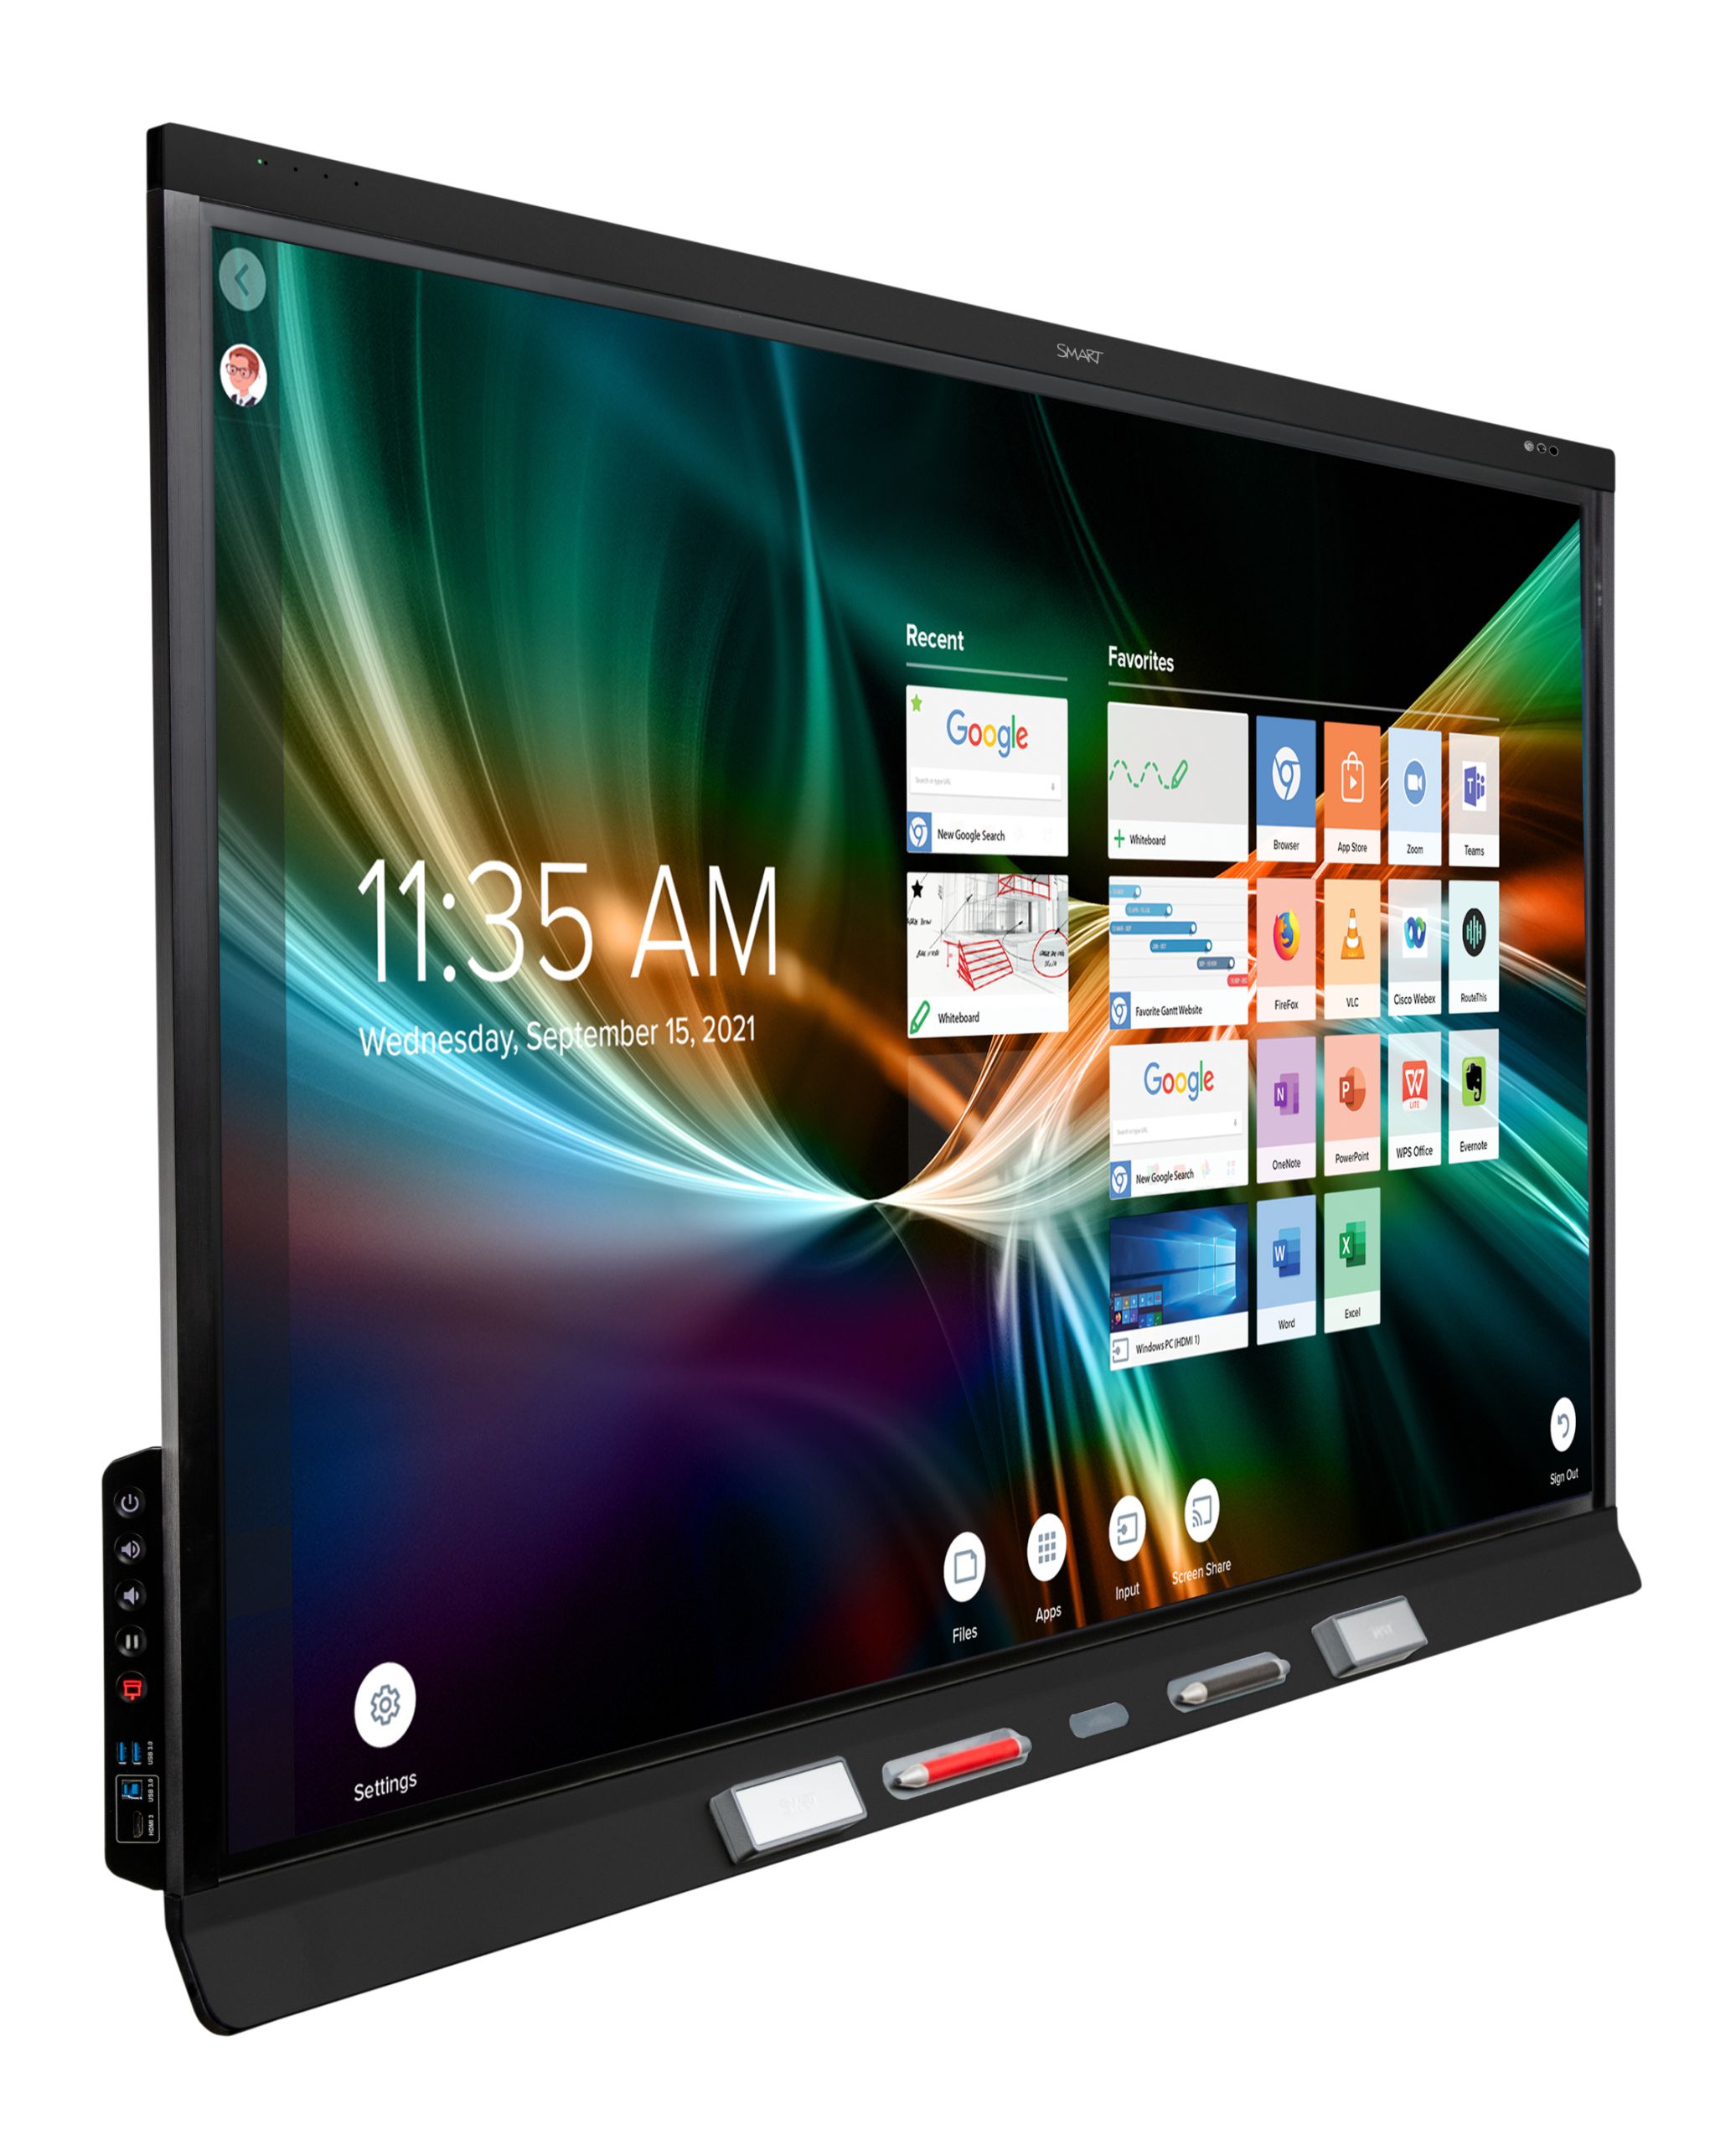 1 - 6000S Pro V3 - iQ home-screen 3.11 - right angle